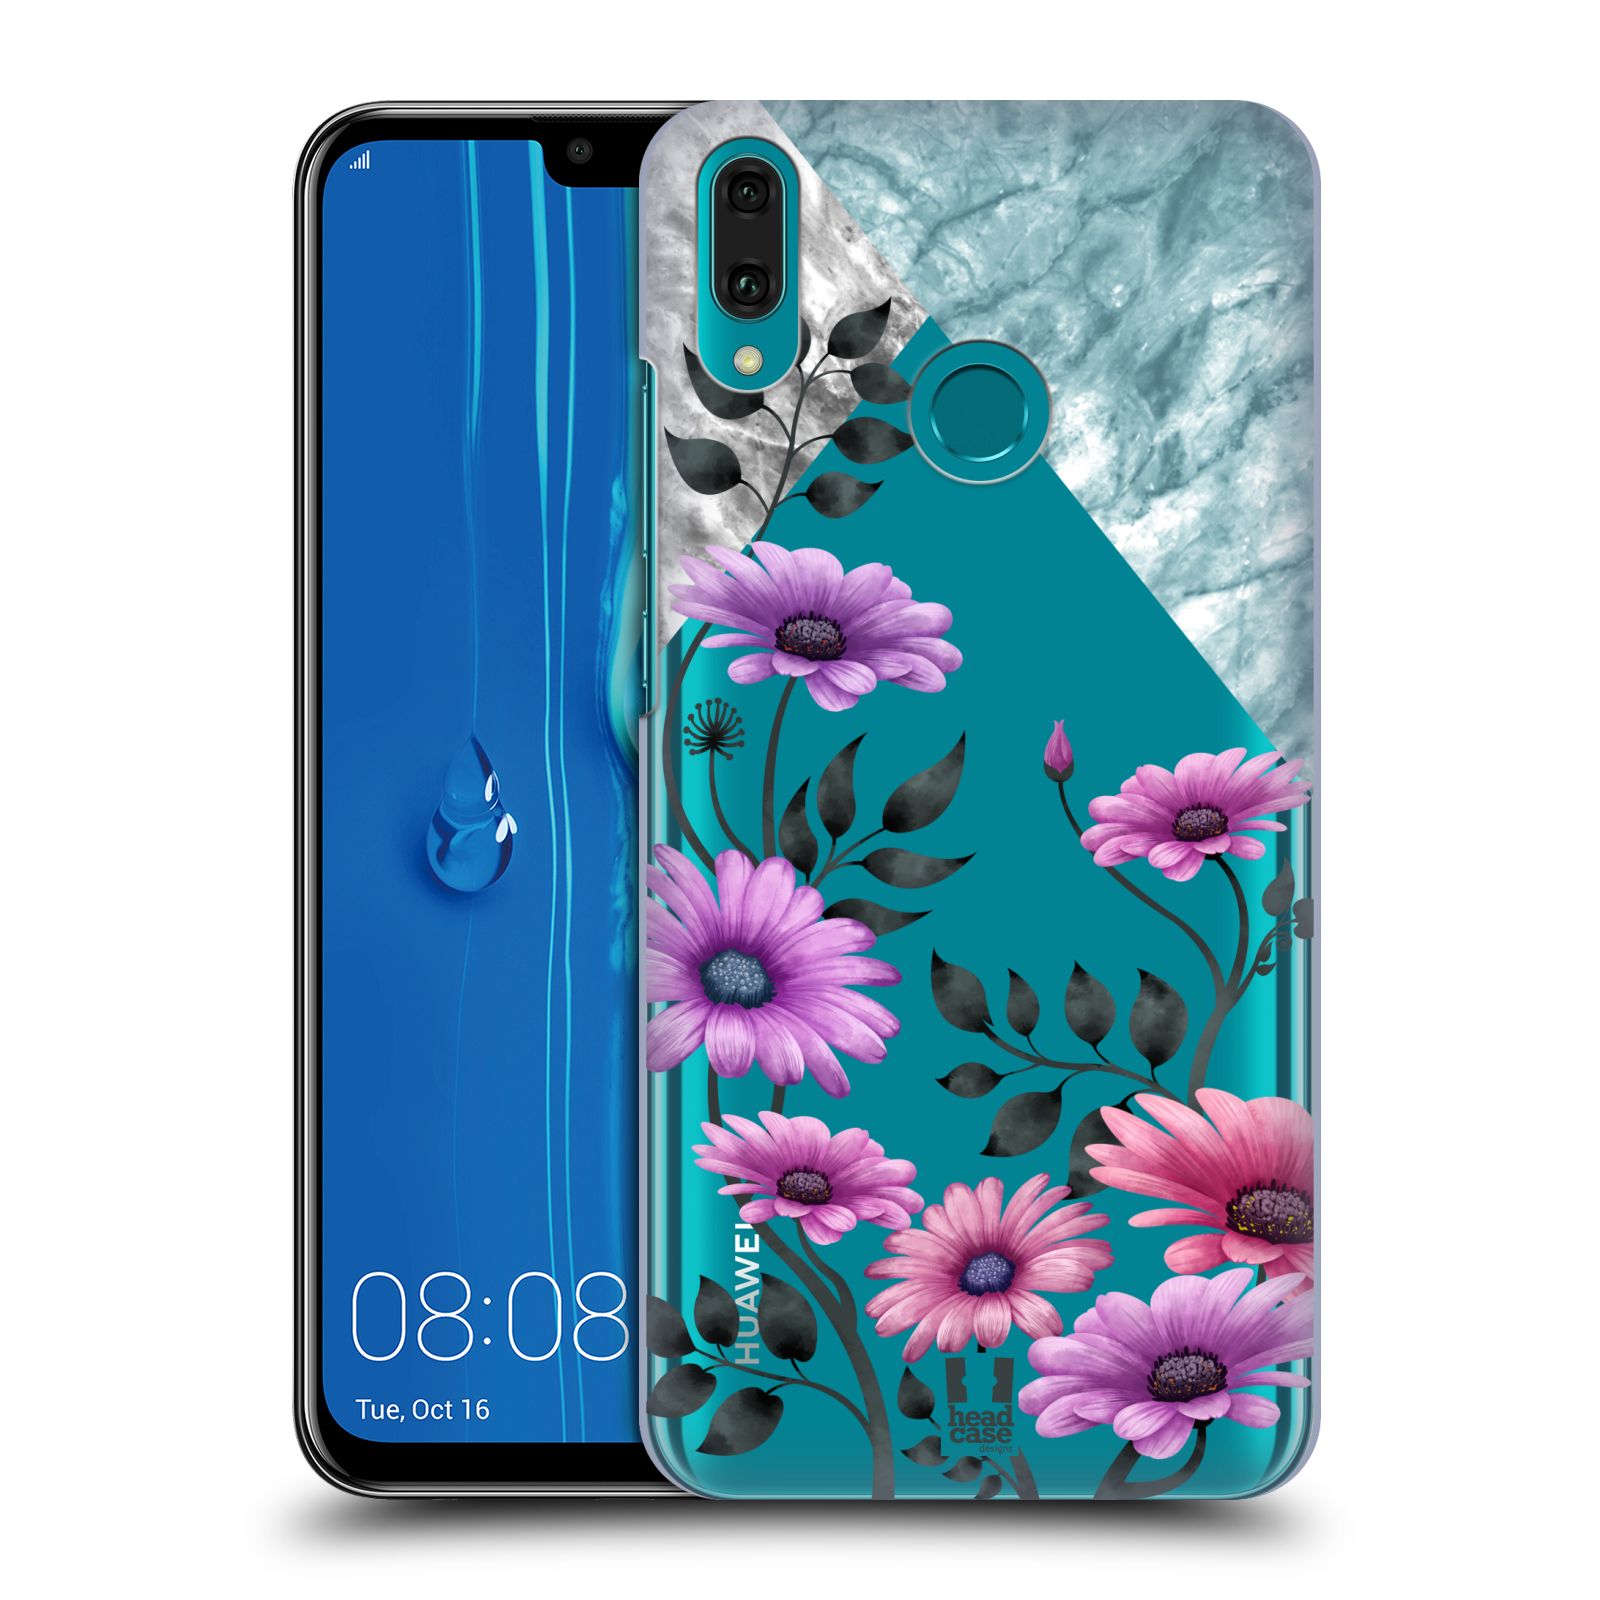 Pouzdro na mobil Huawei Y9 2019 - HEAD CASE - květiny hvězdnice, Aster fialová a modrá